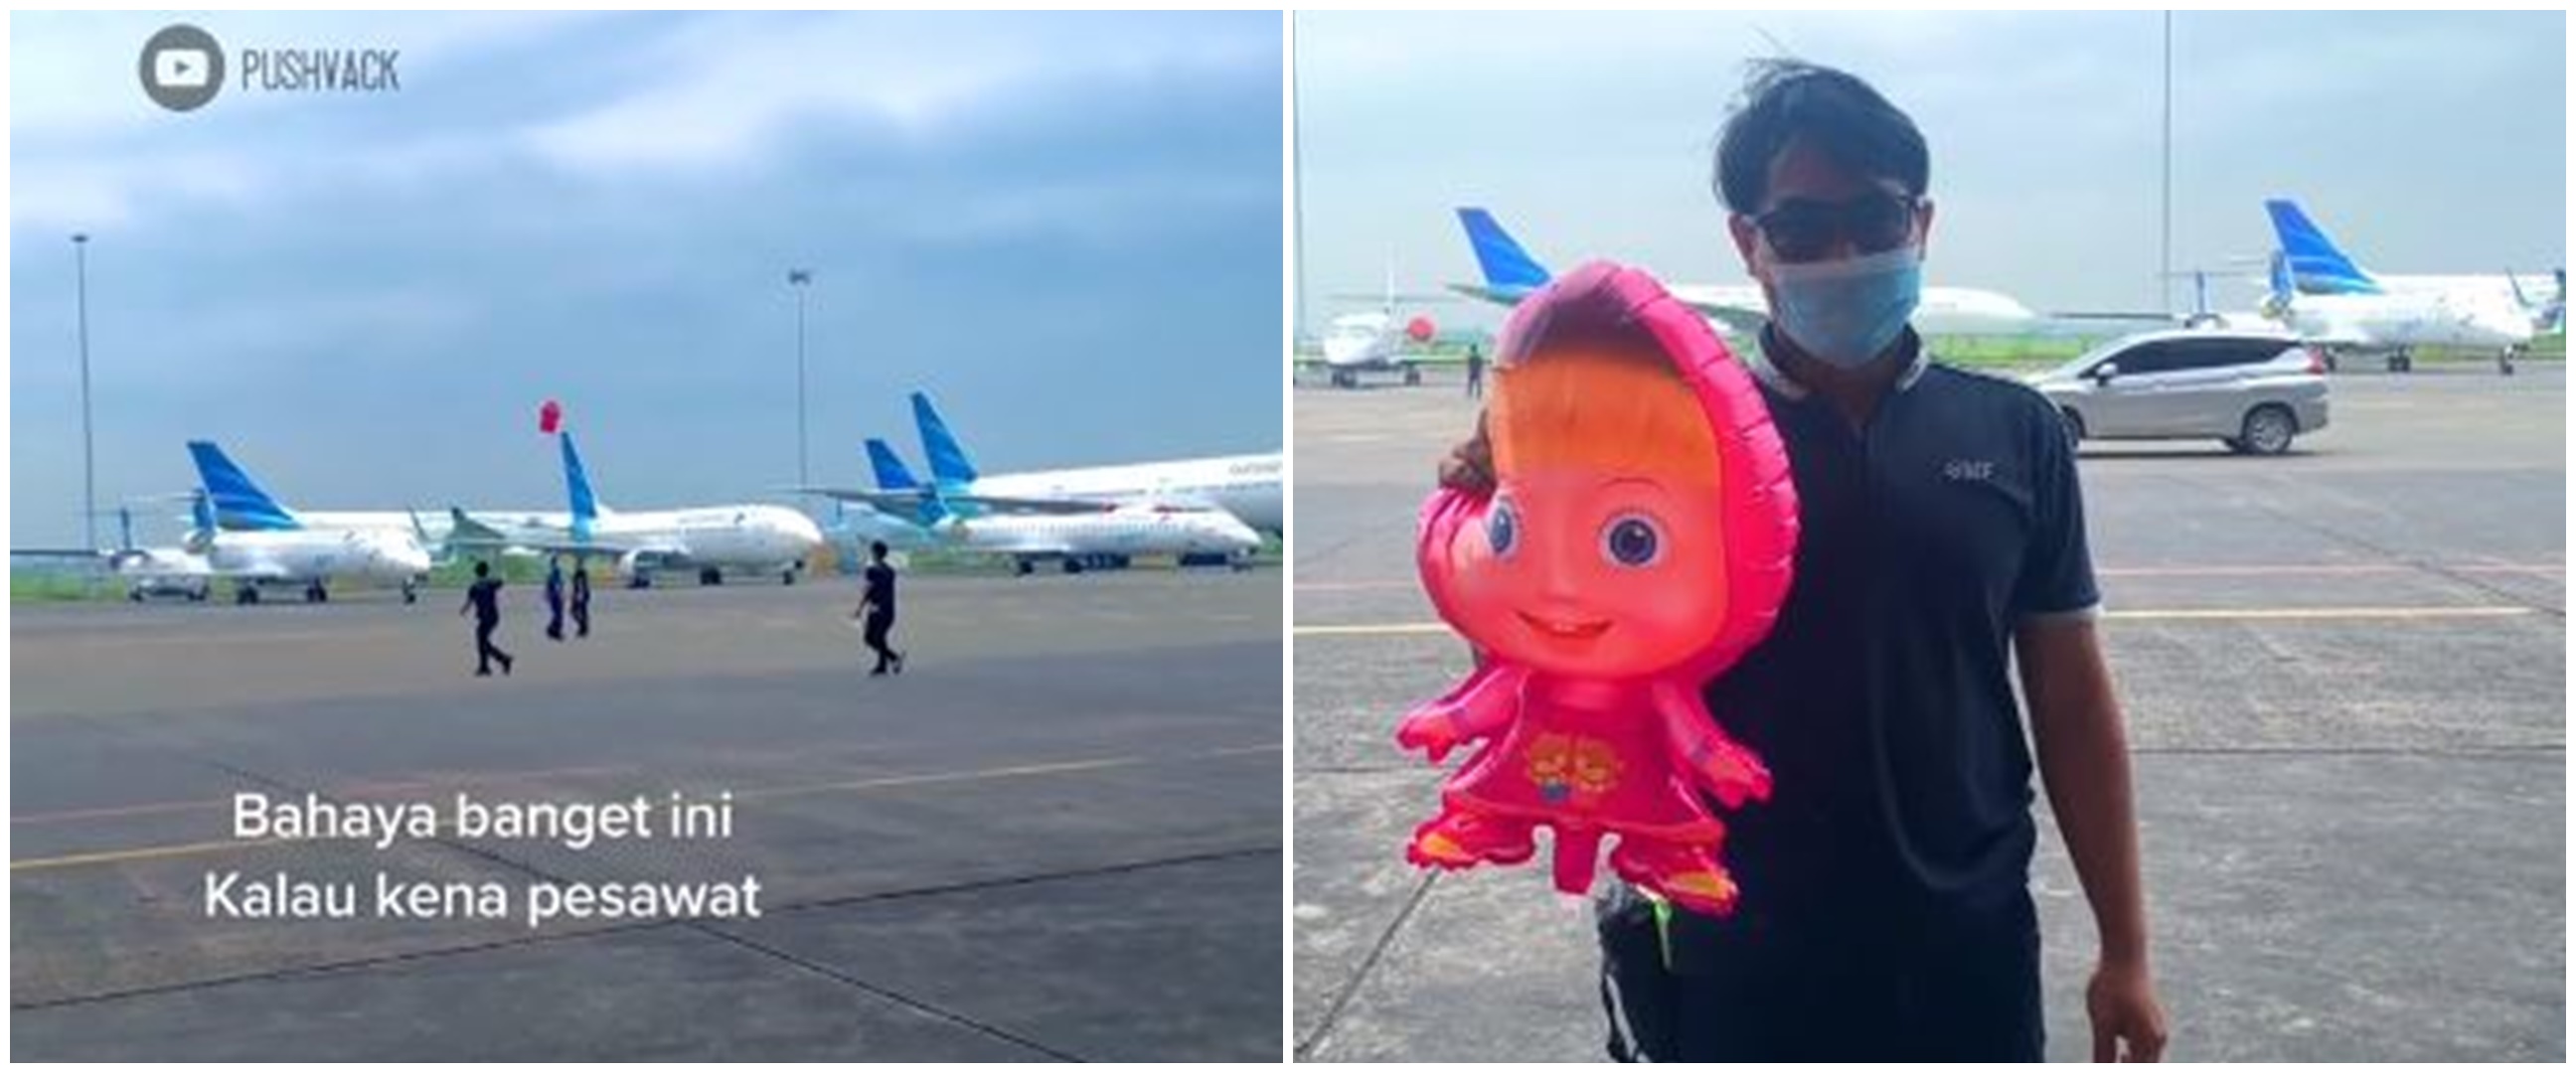 Bikin petugas panik, balon Masha and the Bear nyasar sampai bandara